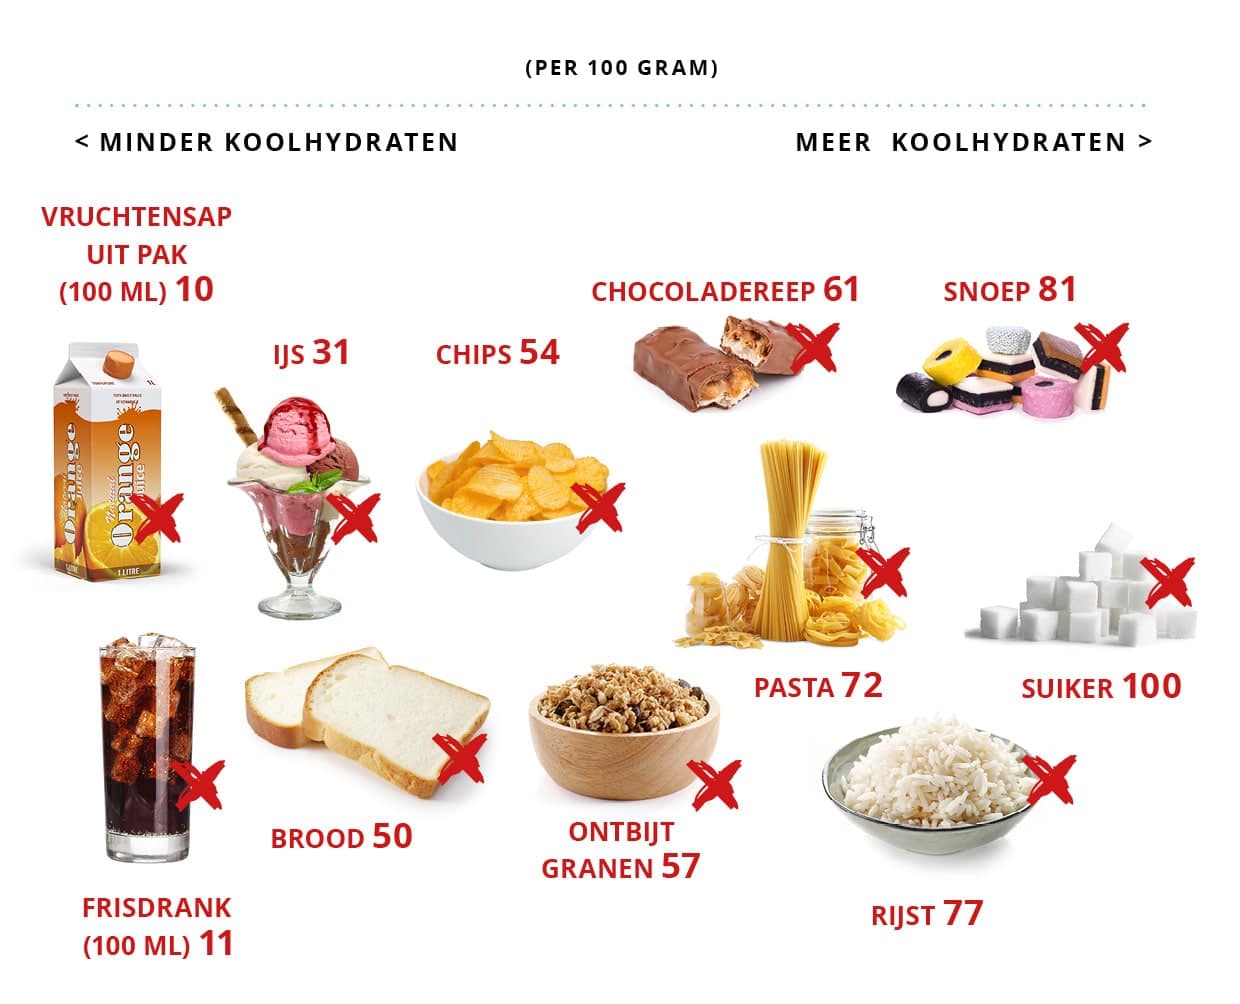 overzicht met producten met snelle koolhydraten die je beter kunt vermijden bij een koolhydraatarm dieet